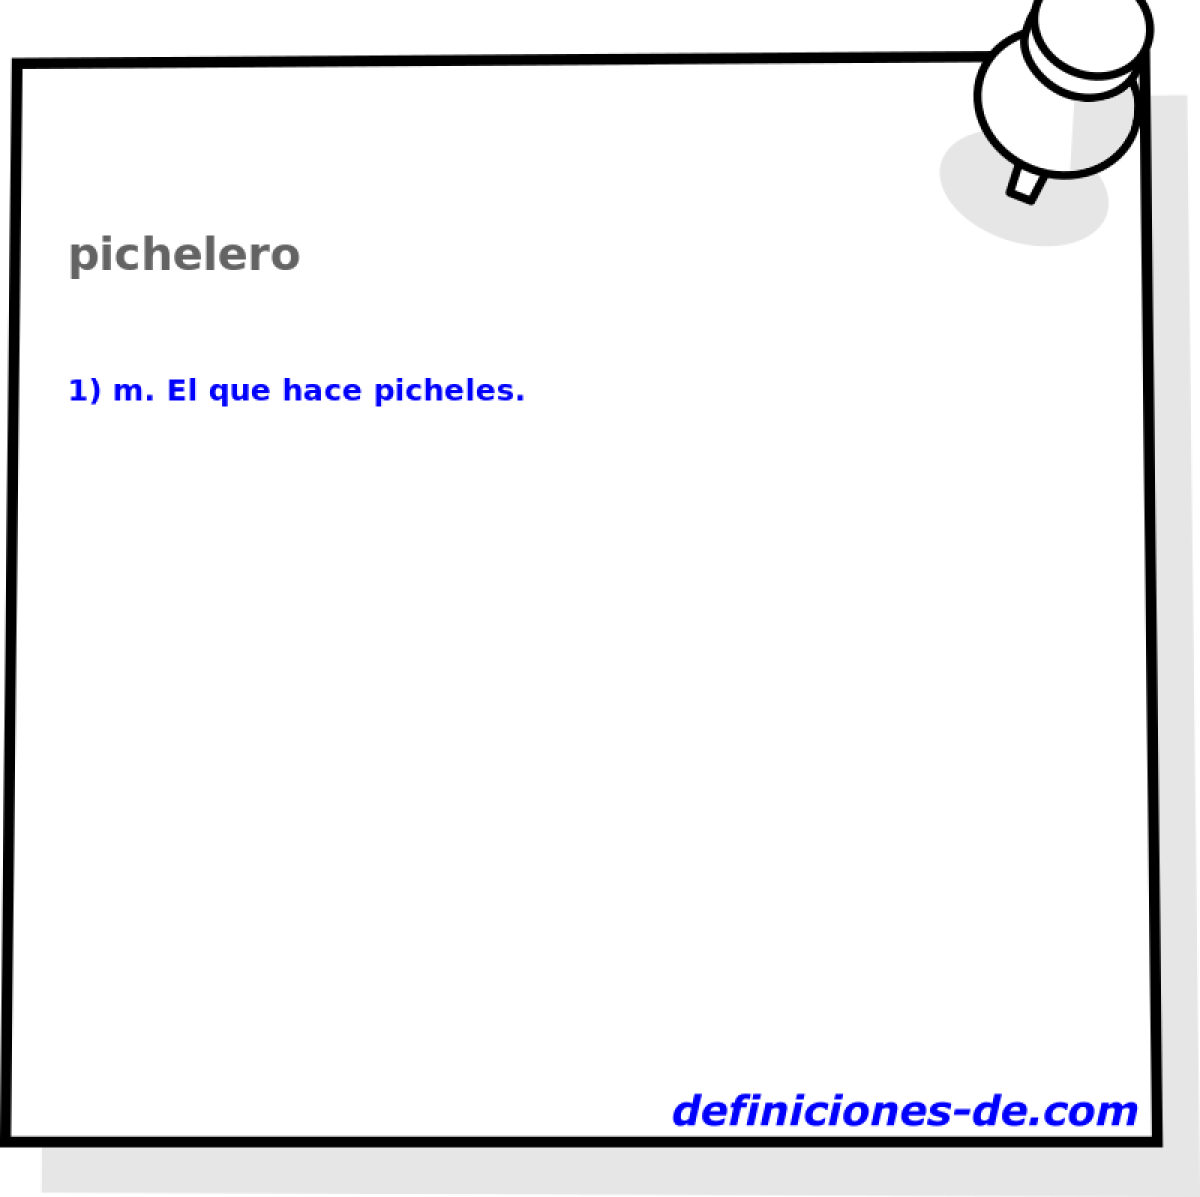 pichelero 